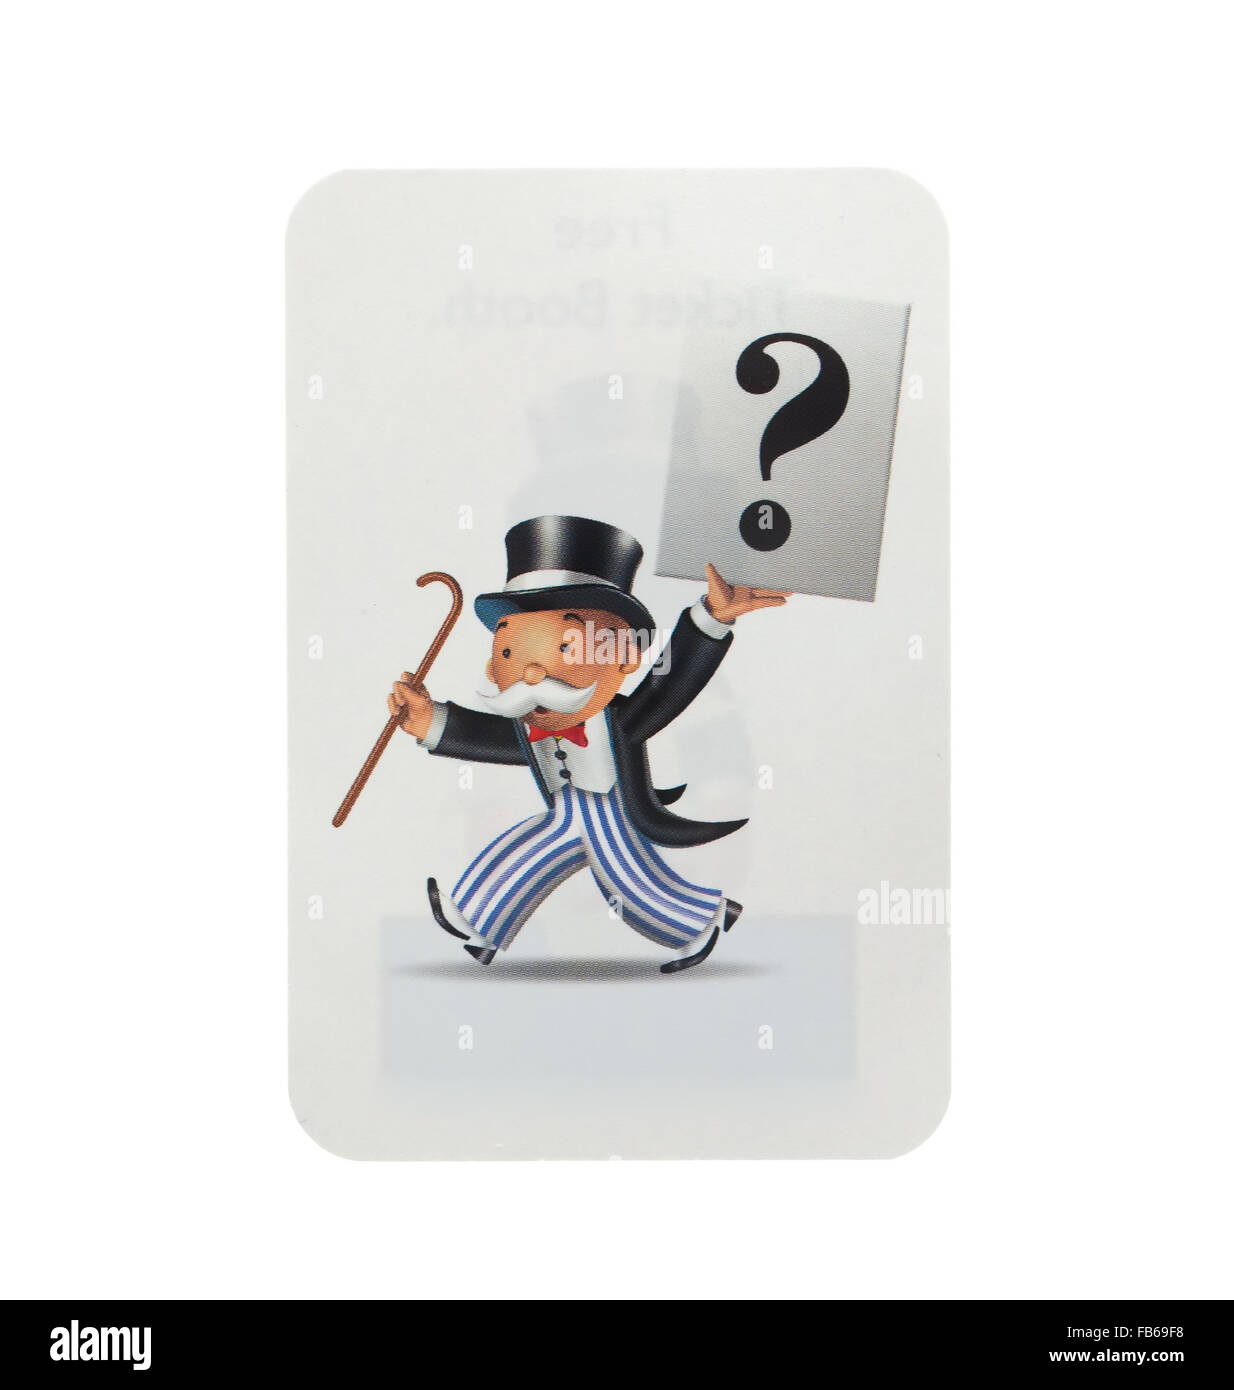 Edition anglais du monopole montrant une carte Chance, Le classique jeu d'échange de Parker Brothers Banque D'Images